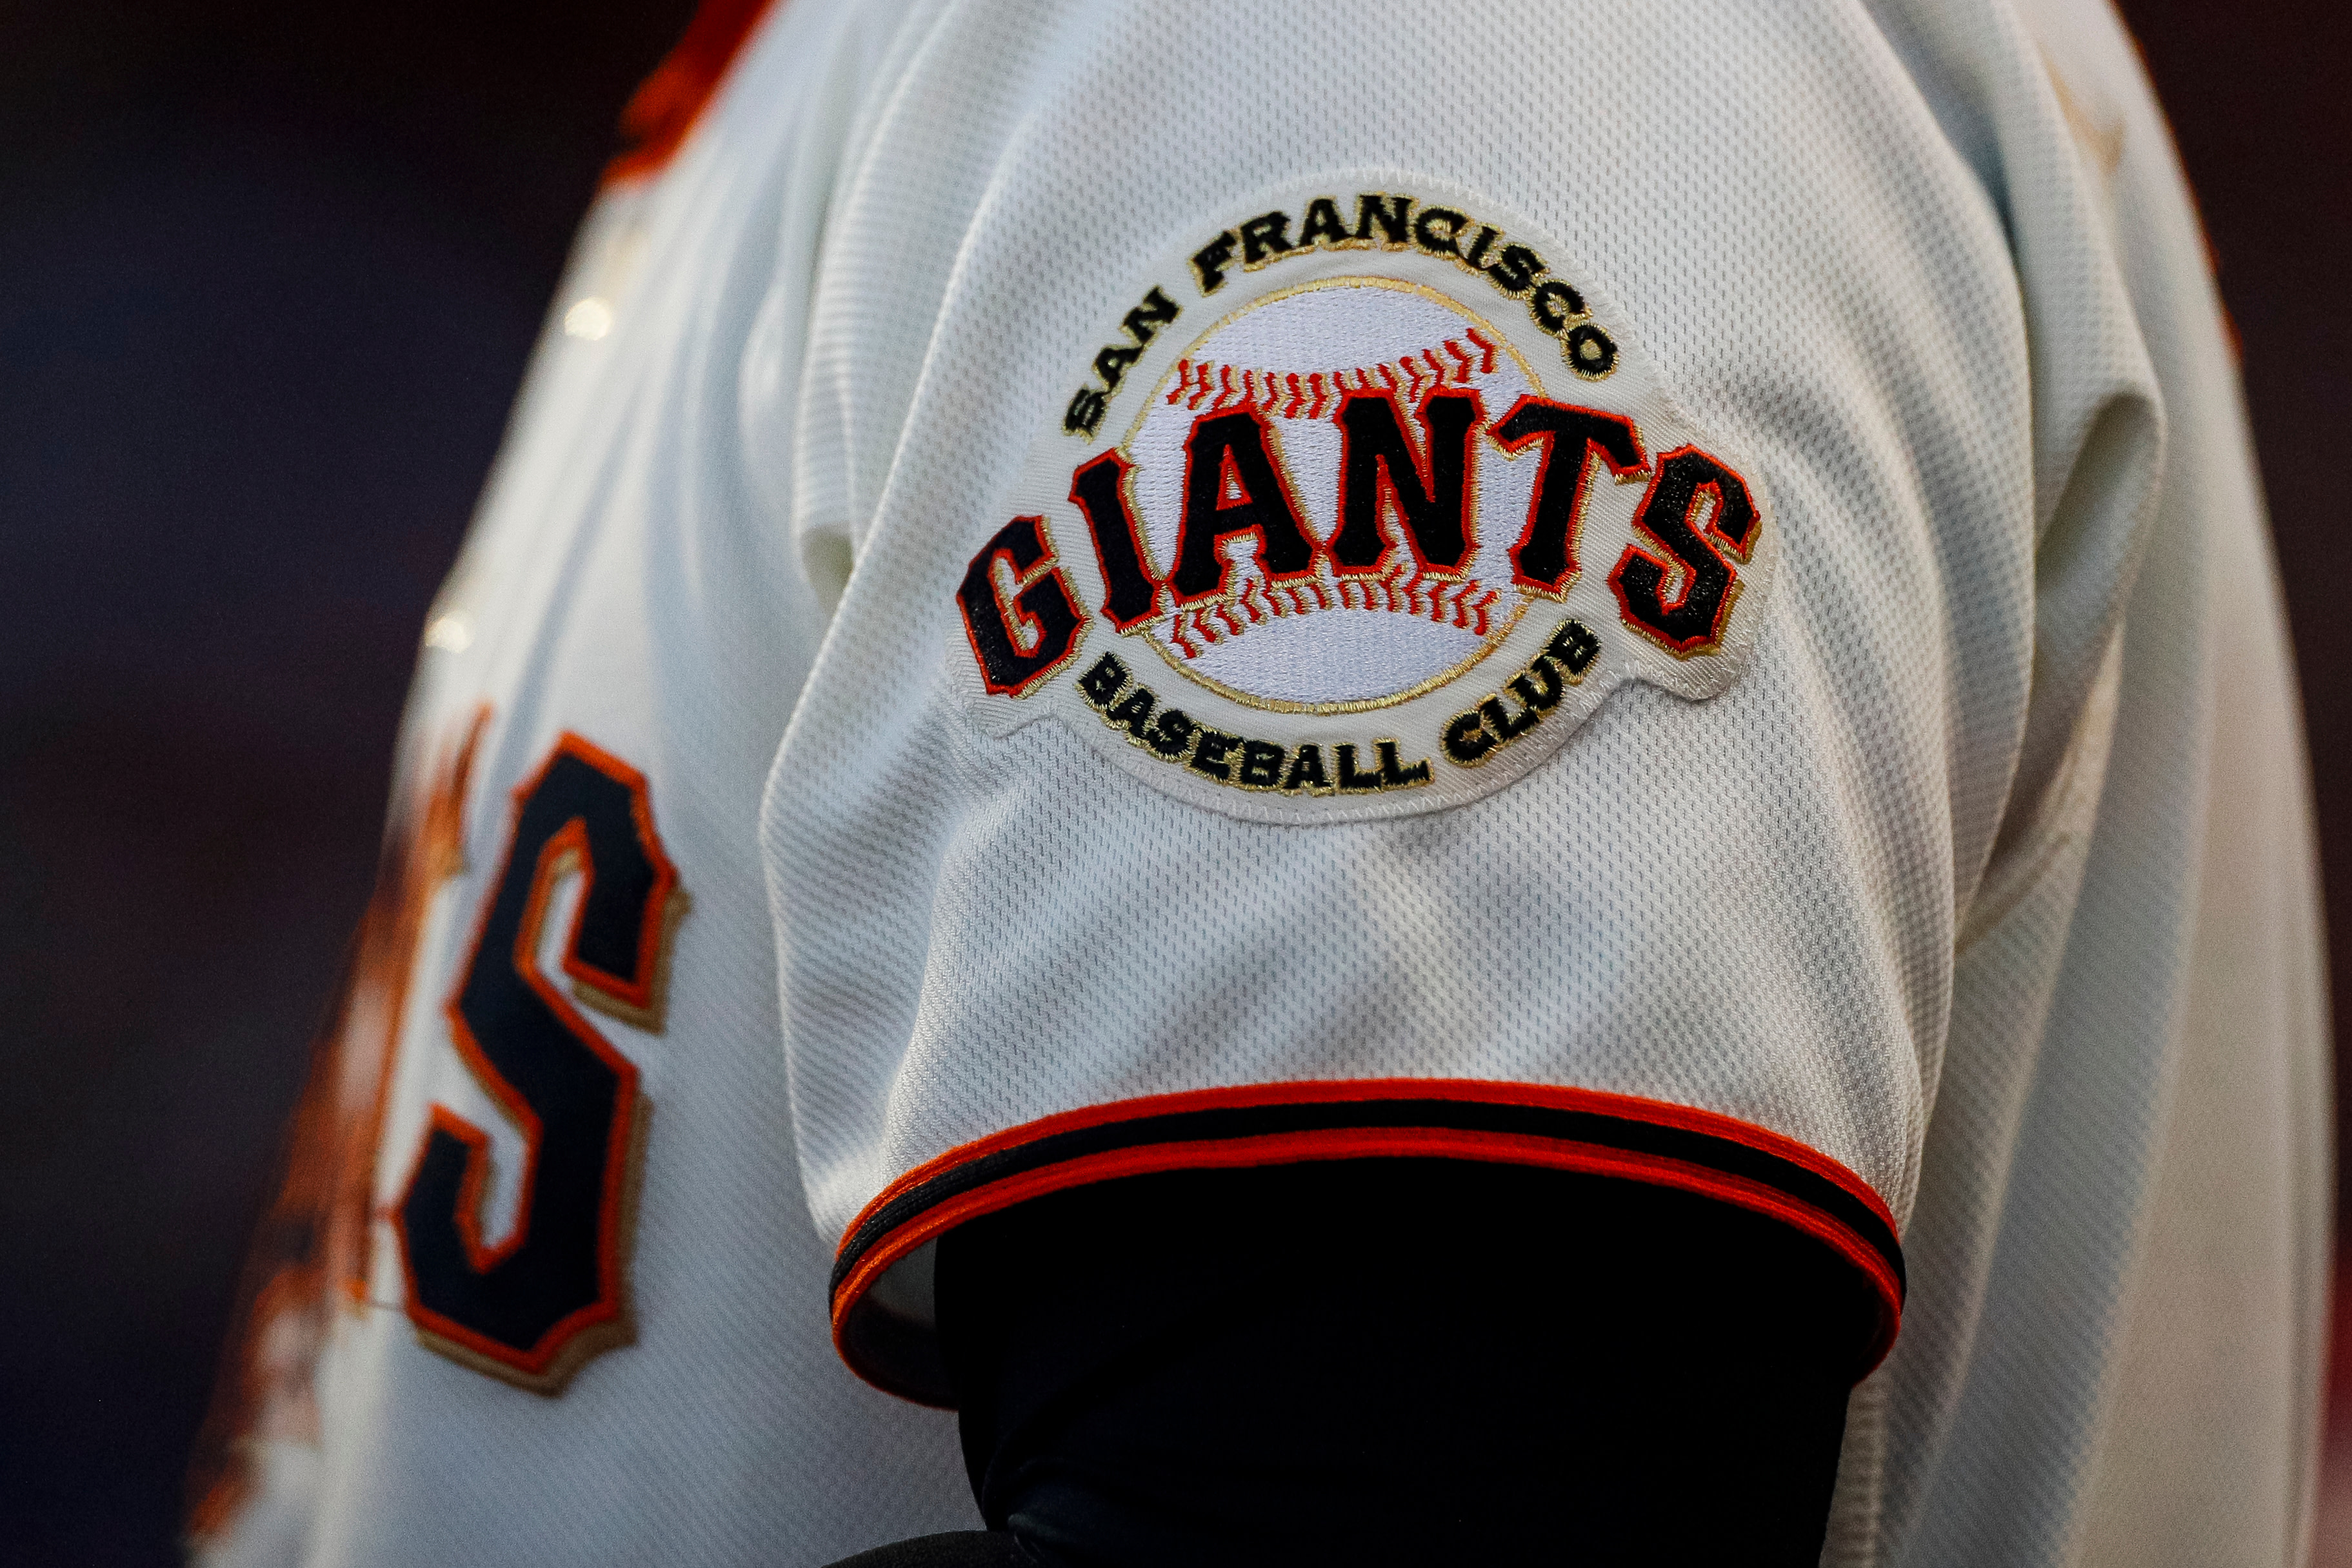 San Francisco Giants  Major League Baseball, News, Scores